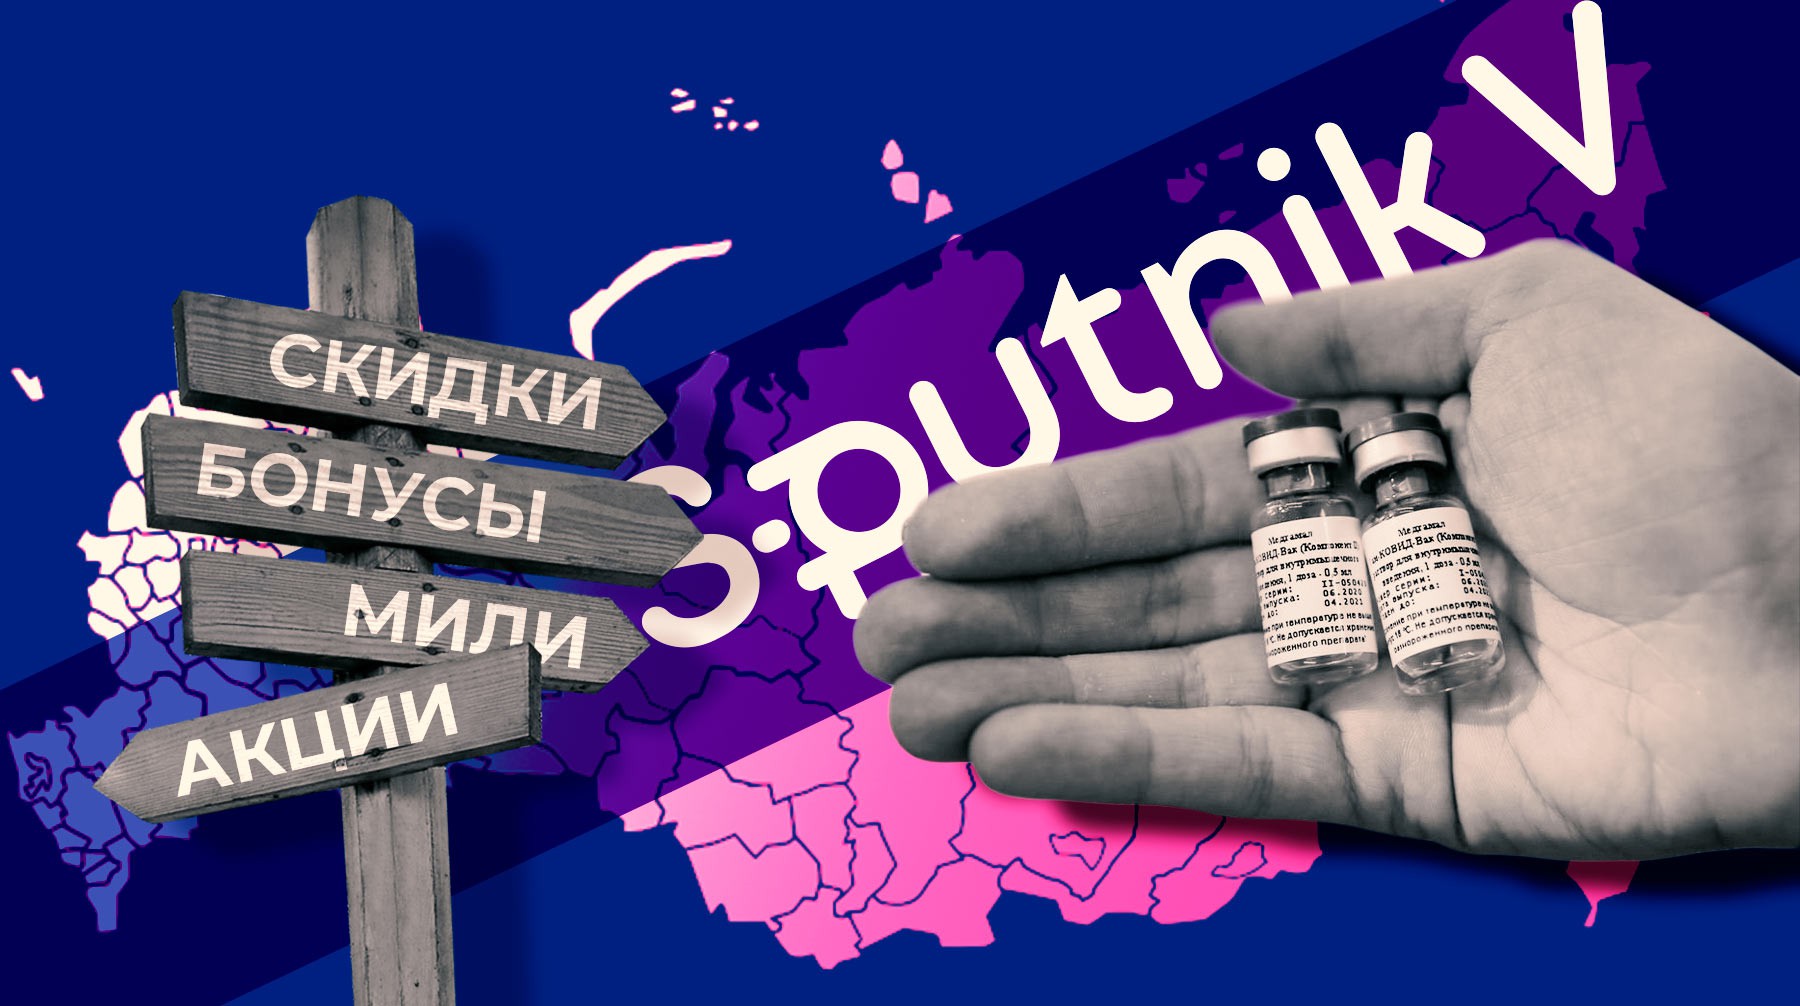 Dailystorm - Прививка от COVID. Какие бонусы предлагают россиянам за вакцинацию от коронавируса